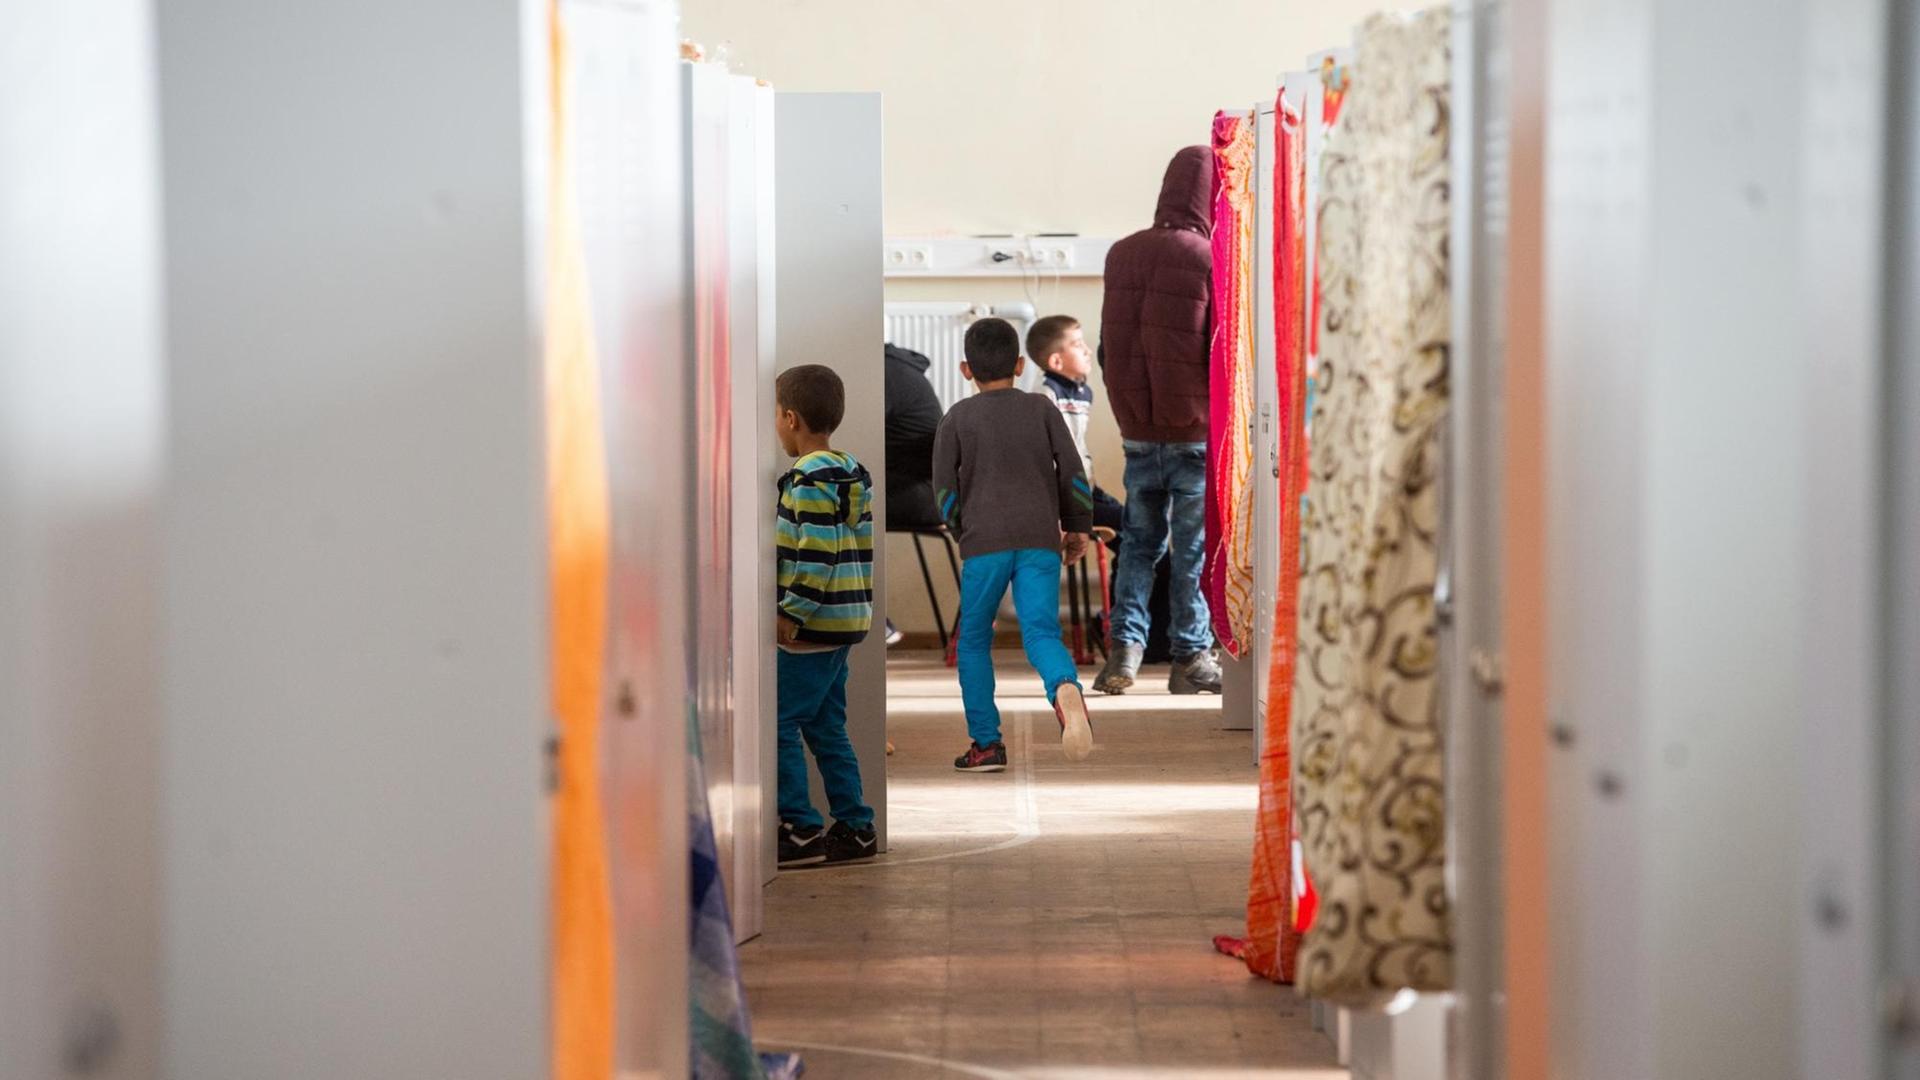 In einer ehemaligen Turnhalle auf dem Gelände der Erstaufnahmeeinrichtung für Asylbewerber in Regensburg (Bayern) sind am 25.09.2015 Flüchtlinge untergebracht.